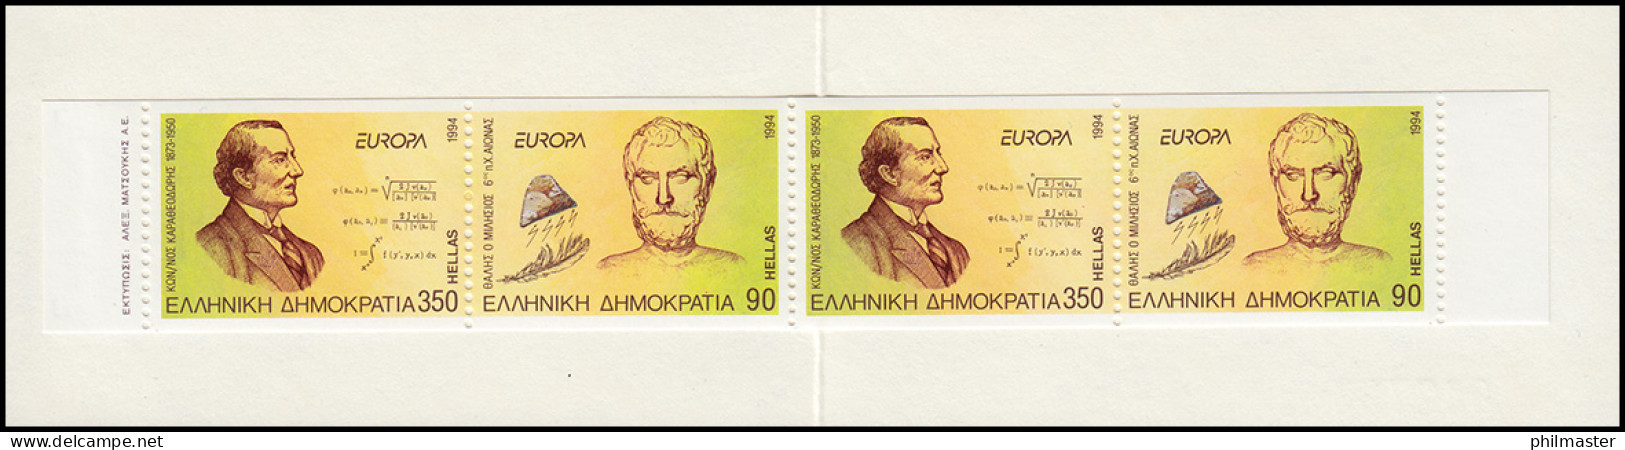 Griechenland Markenheftchen 17 Europa 1994, Postfrisch ** / MNH - Booklets